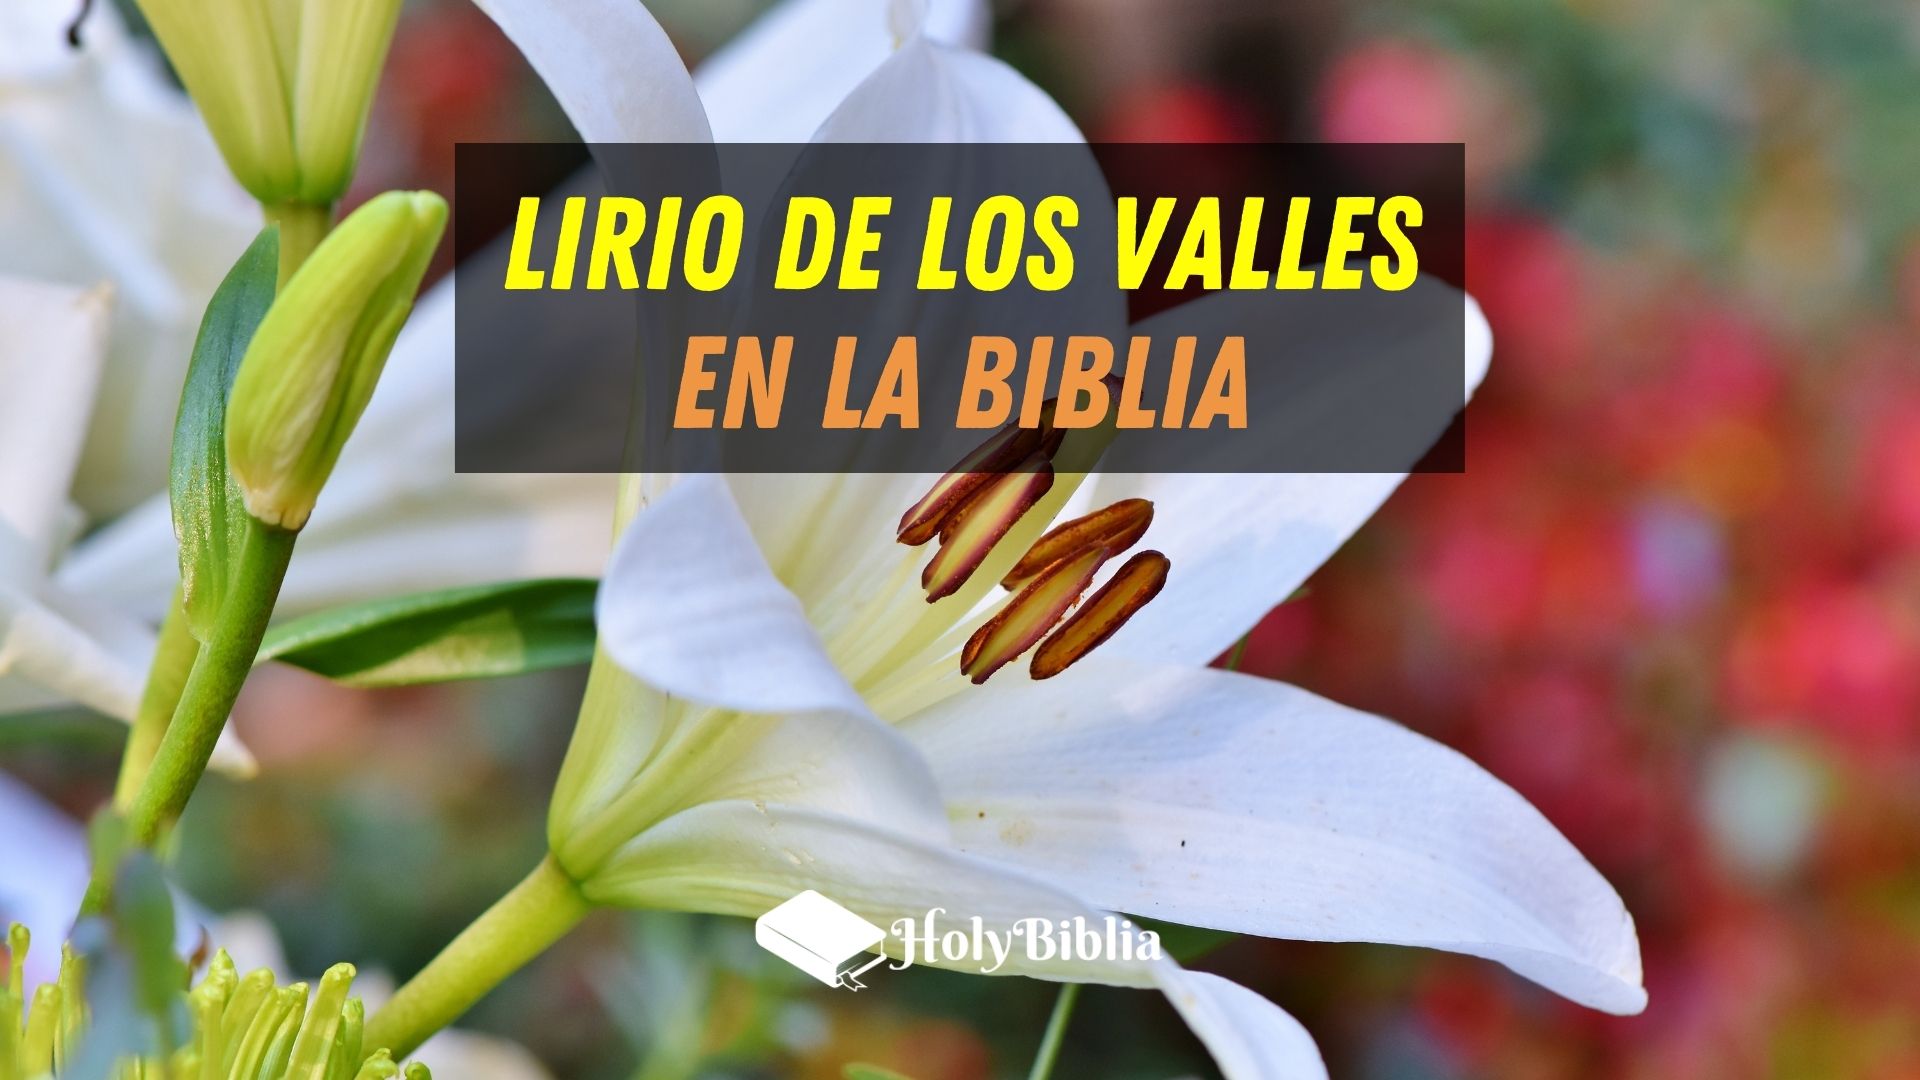 Qué significa lirio de los valles según la Biblia